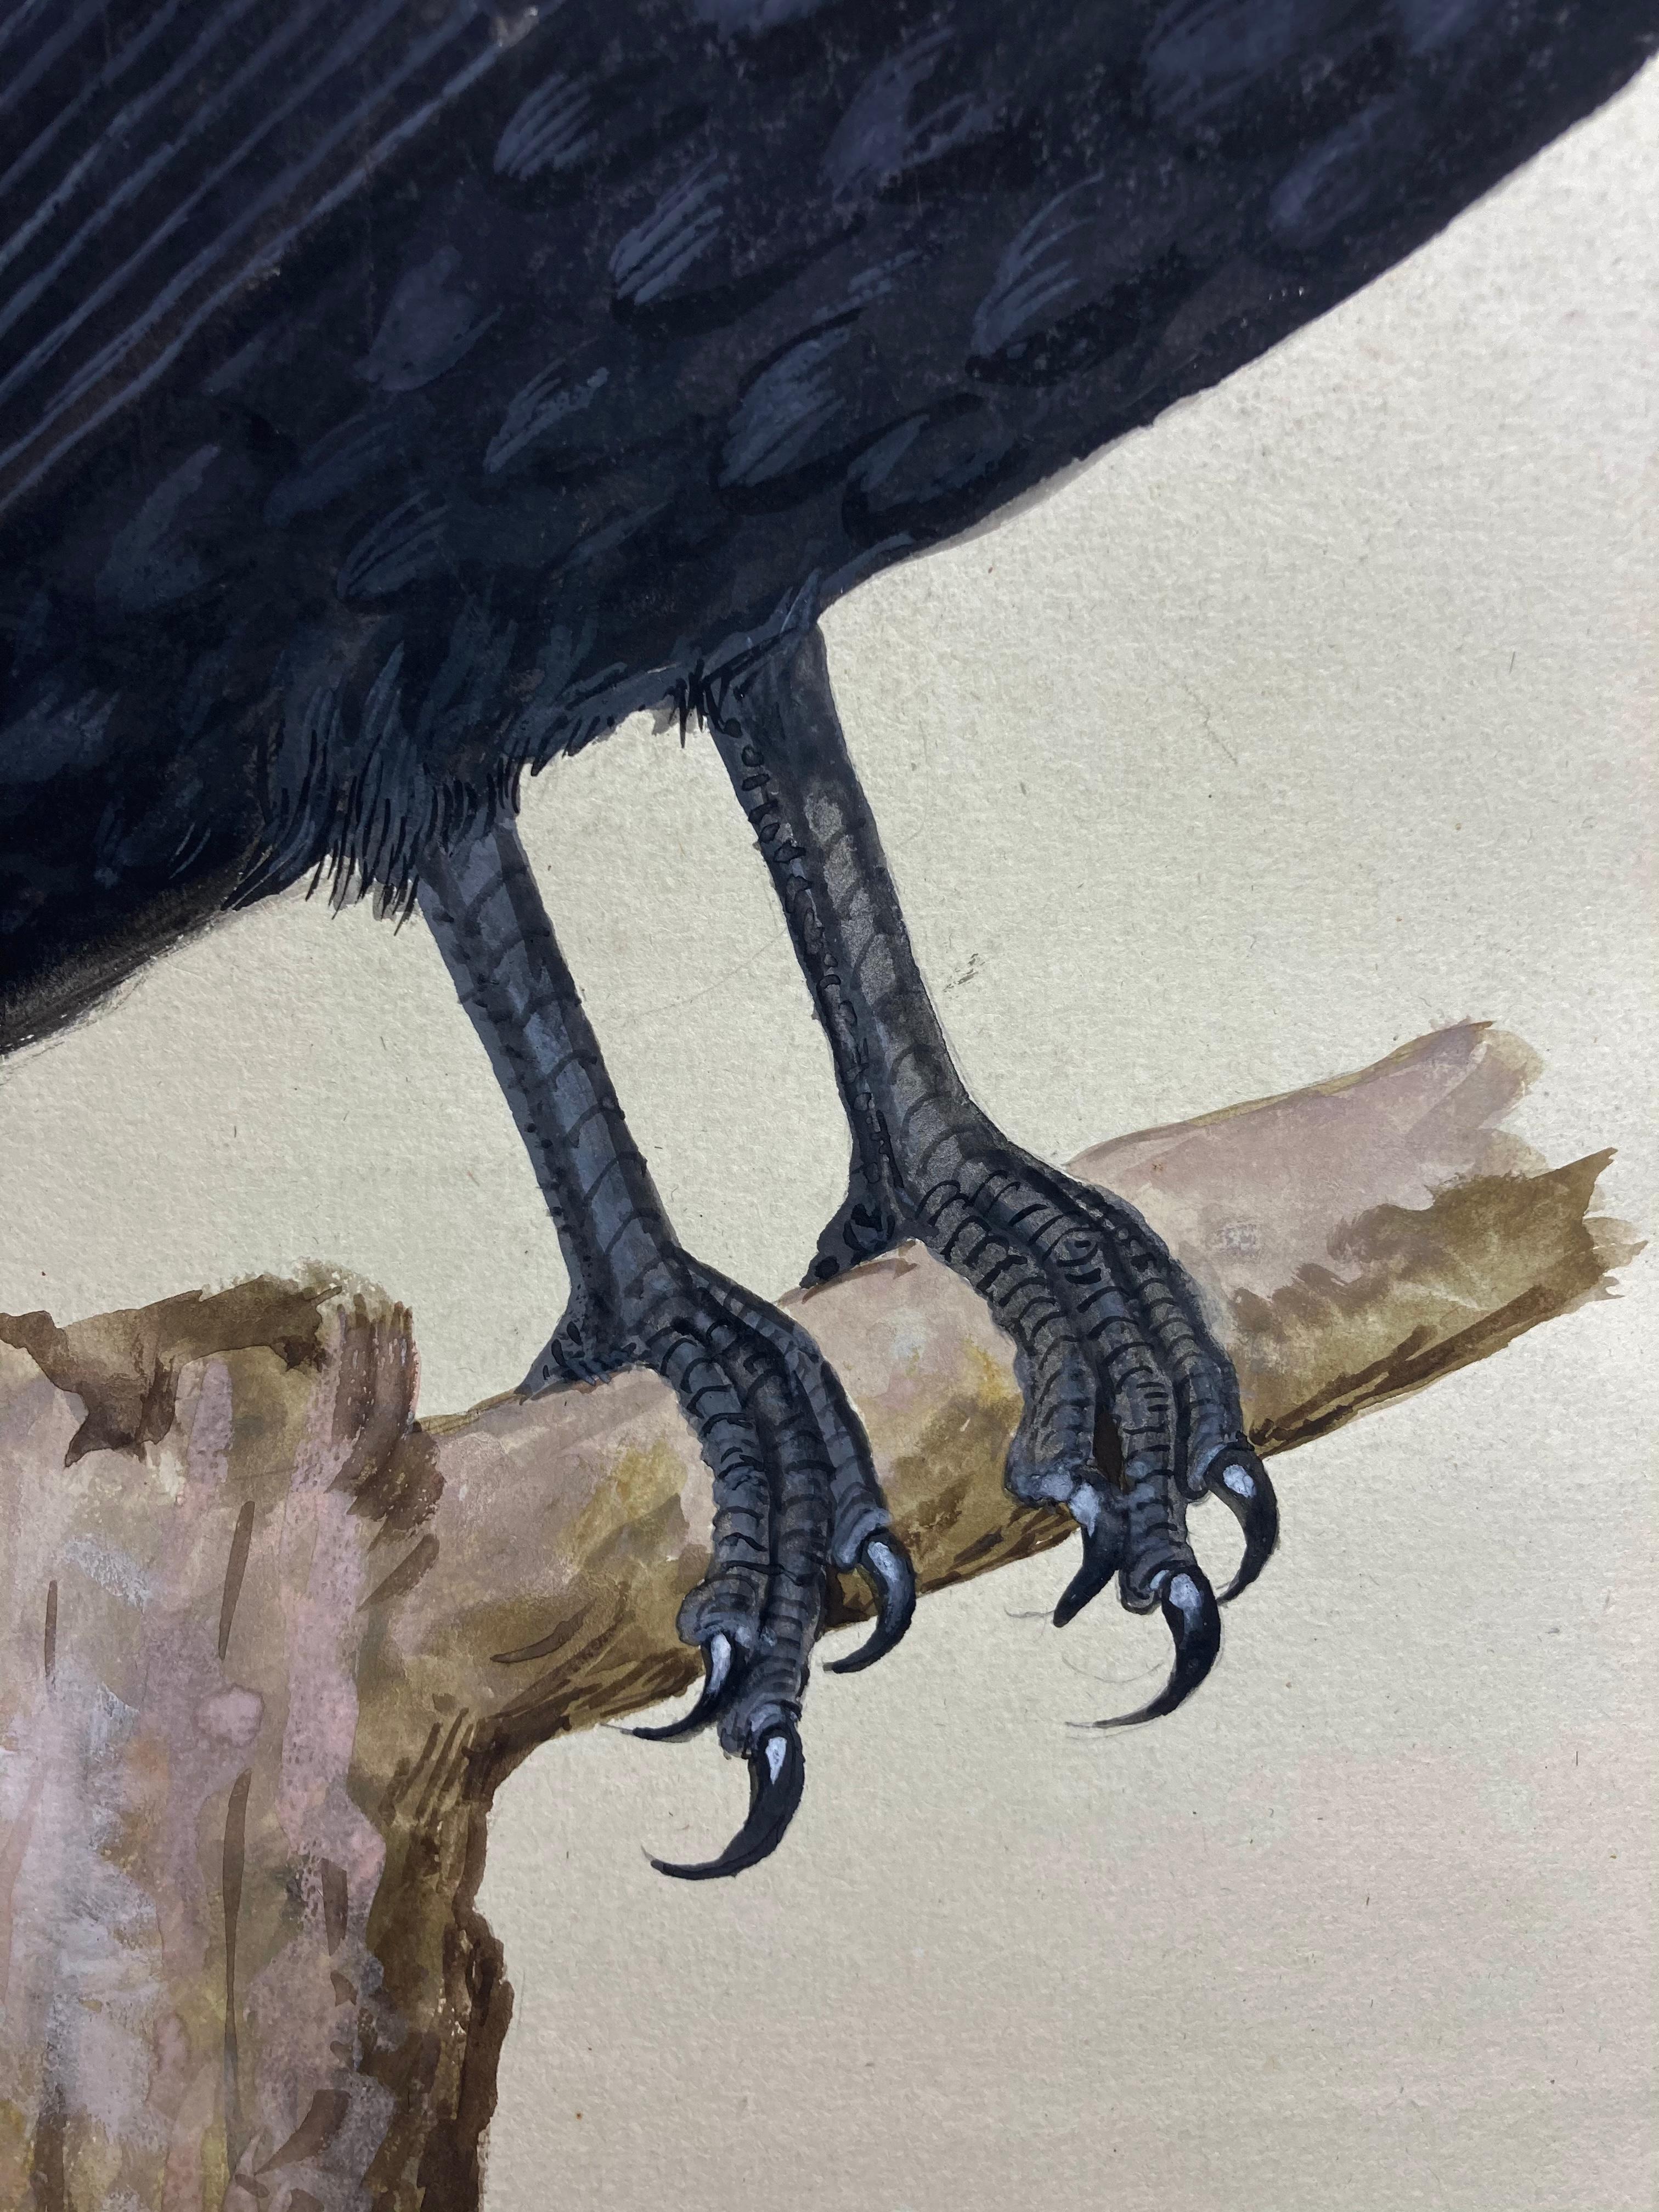 Tierzeichnung einer sitzenden Krähe in Schwarz von einem aufgeklärten britischen Maler (Realismus), Art, von Peter Paillou